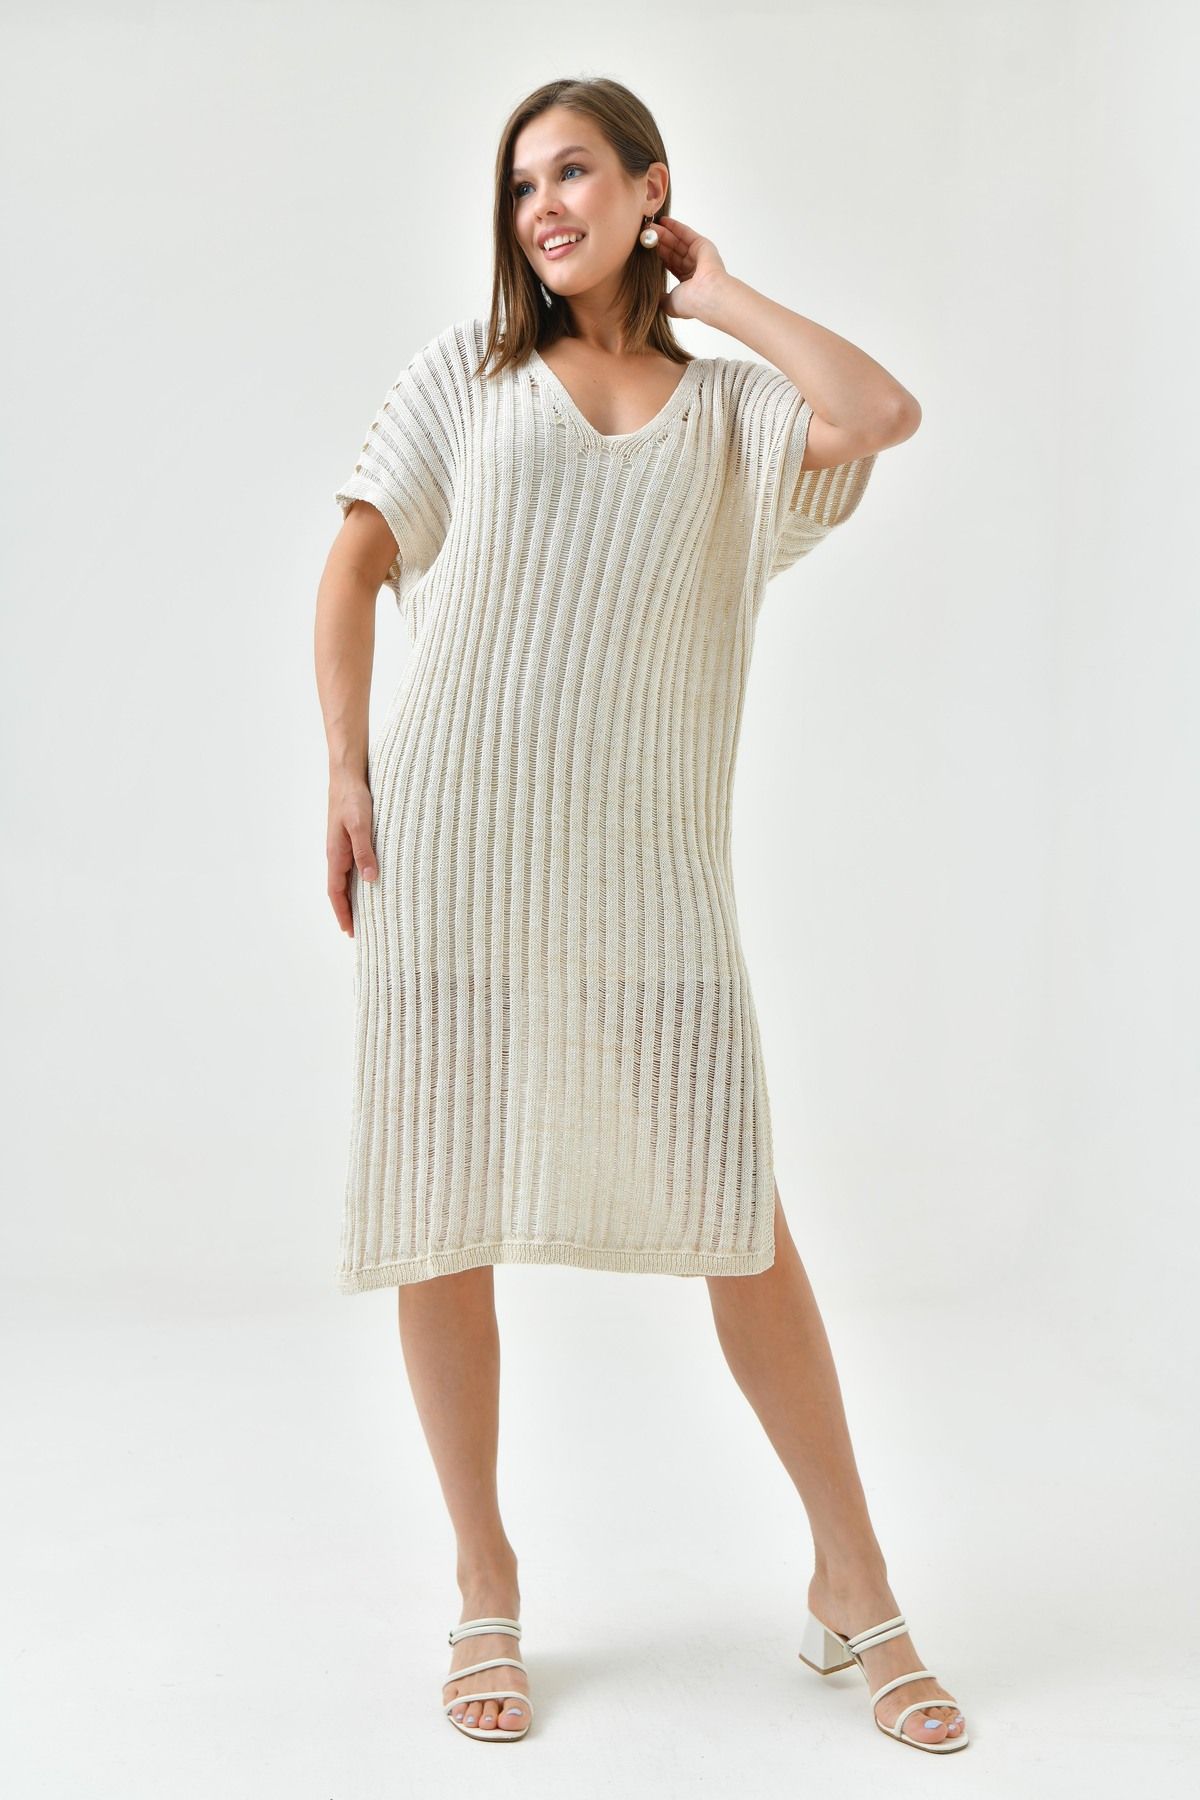 lovebox Kadın Örme Kumaş Astarlı Yırtmaçlı Tasarım V Yaka Kolsuz Oversize Midi Elbise 9092